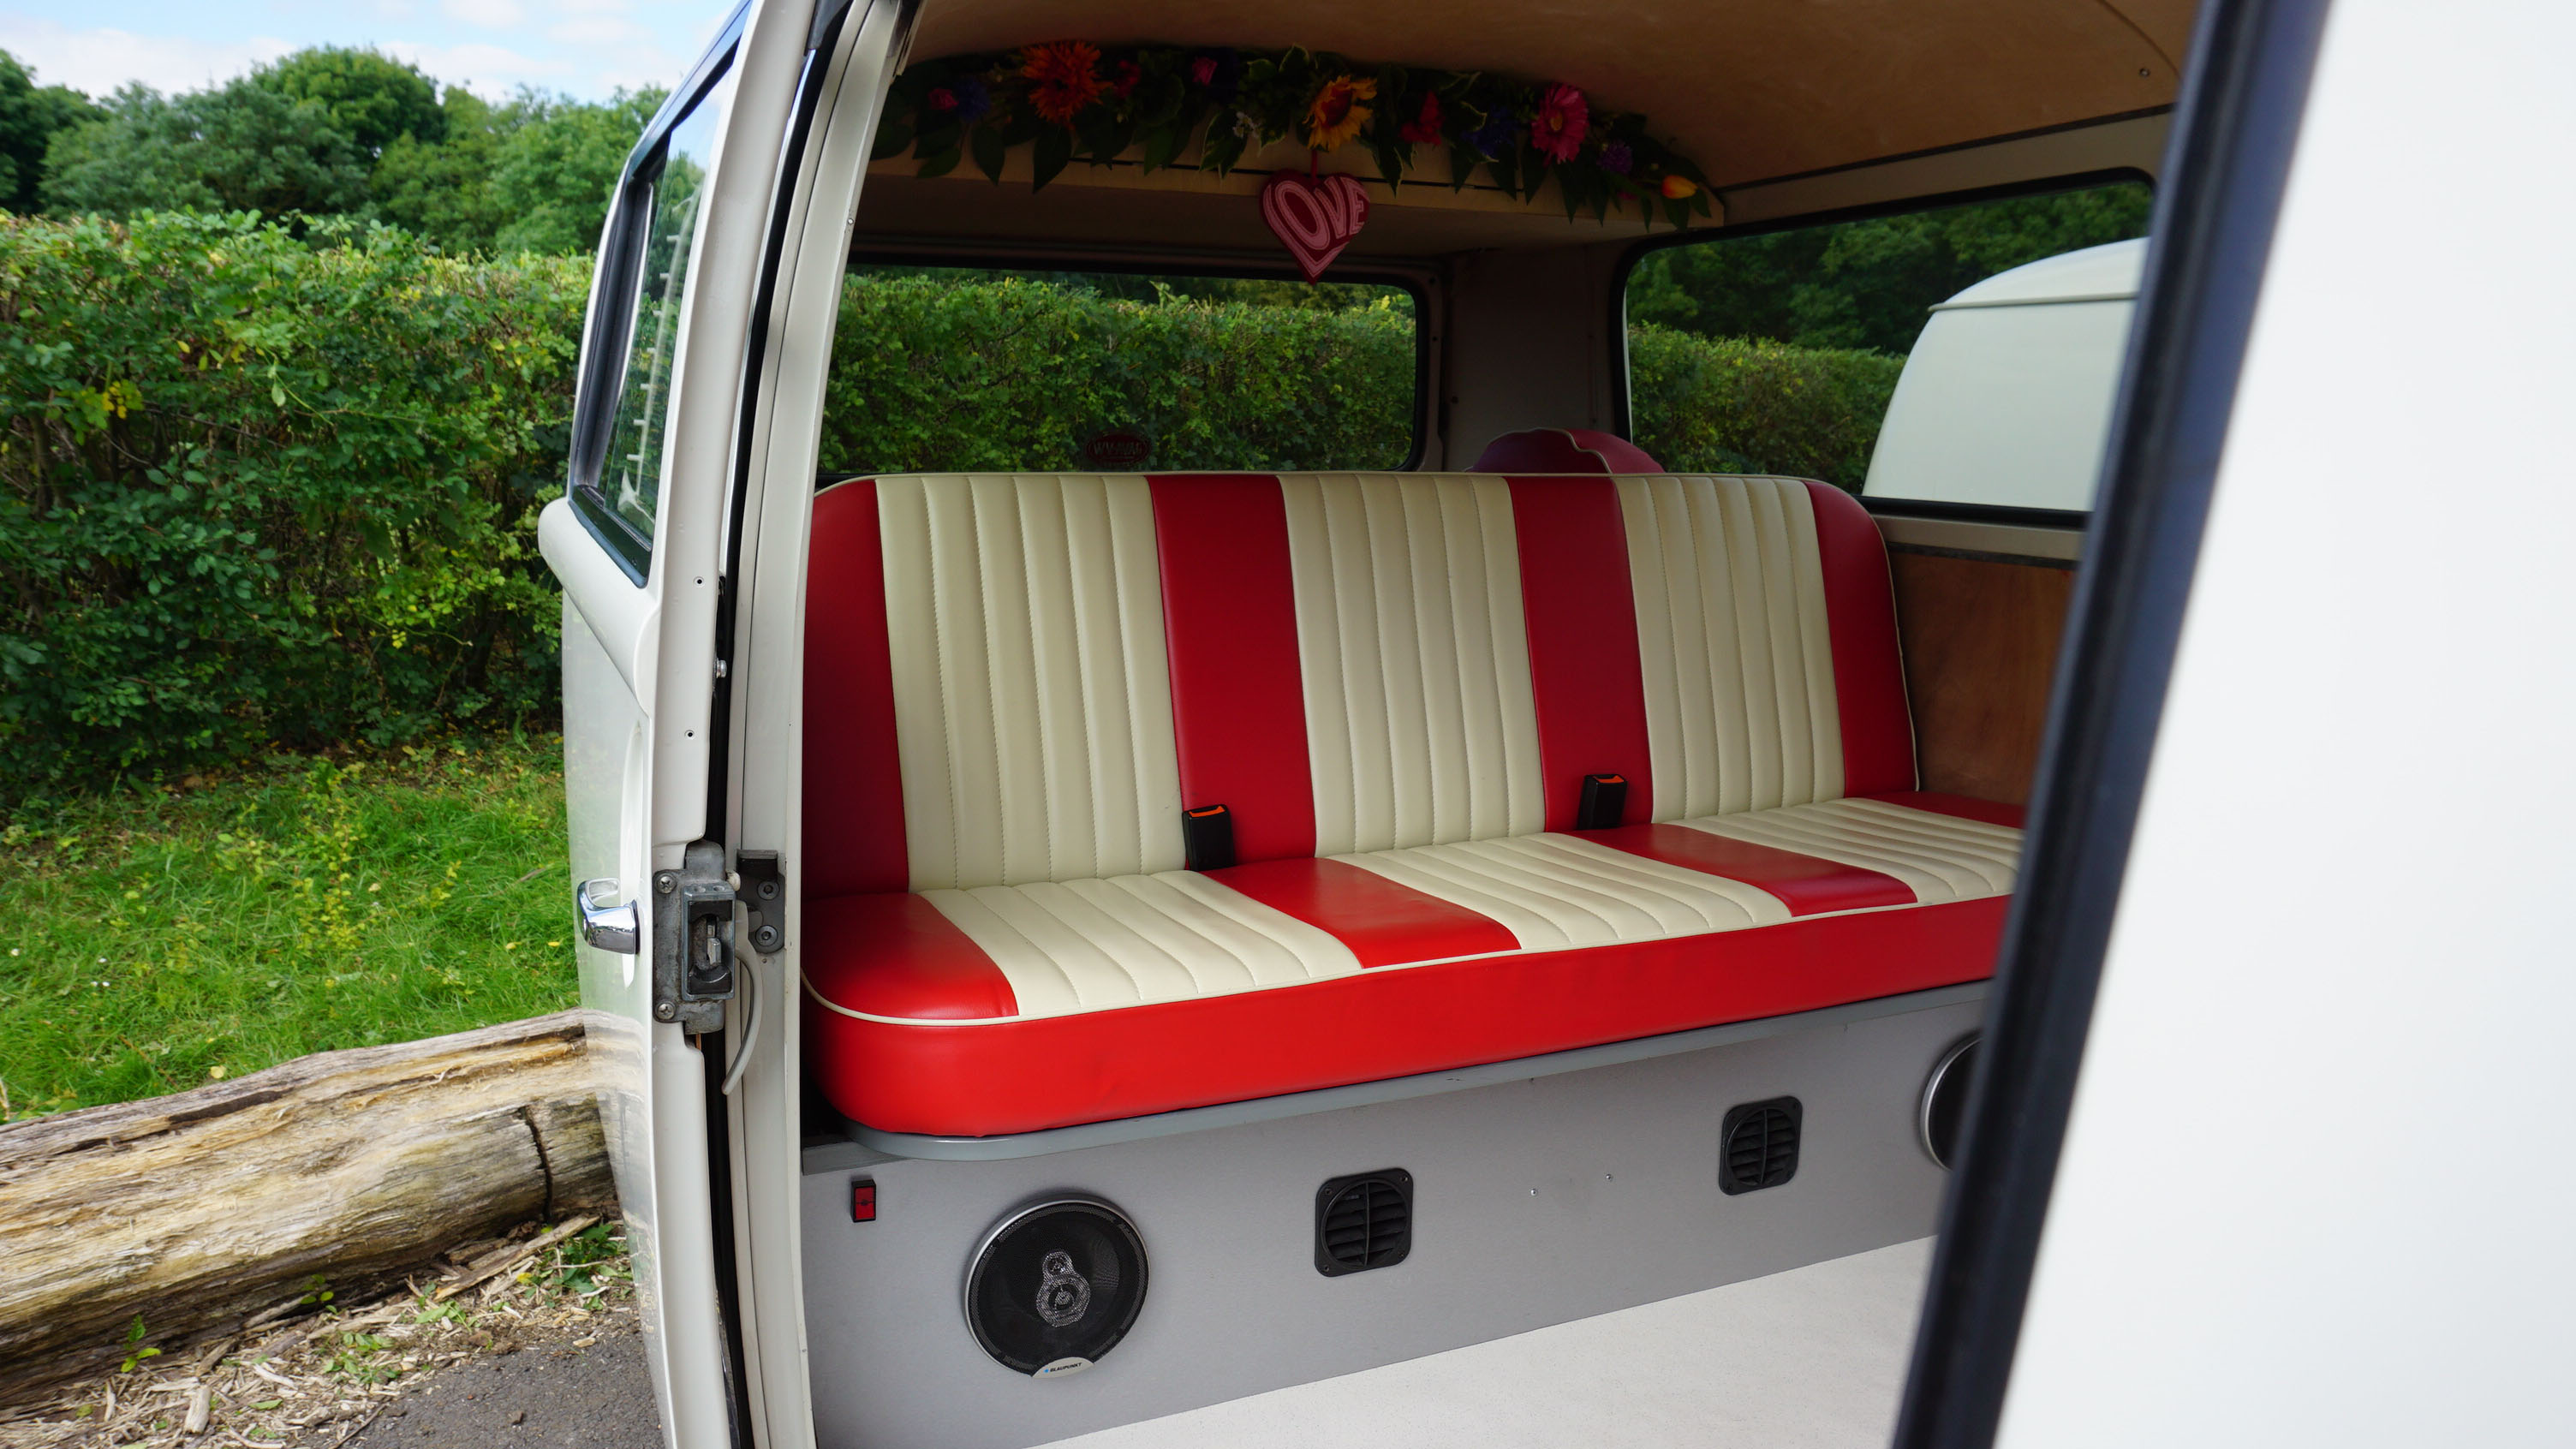 Volkswagen Bay Window Camper Van